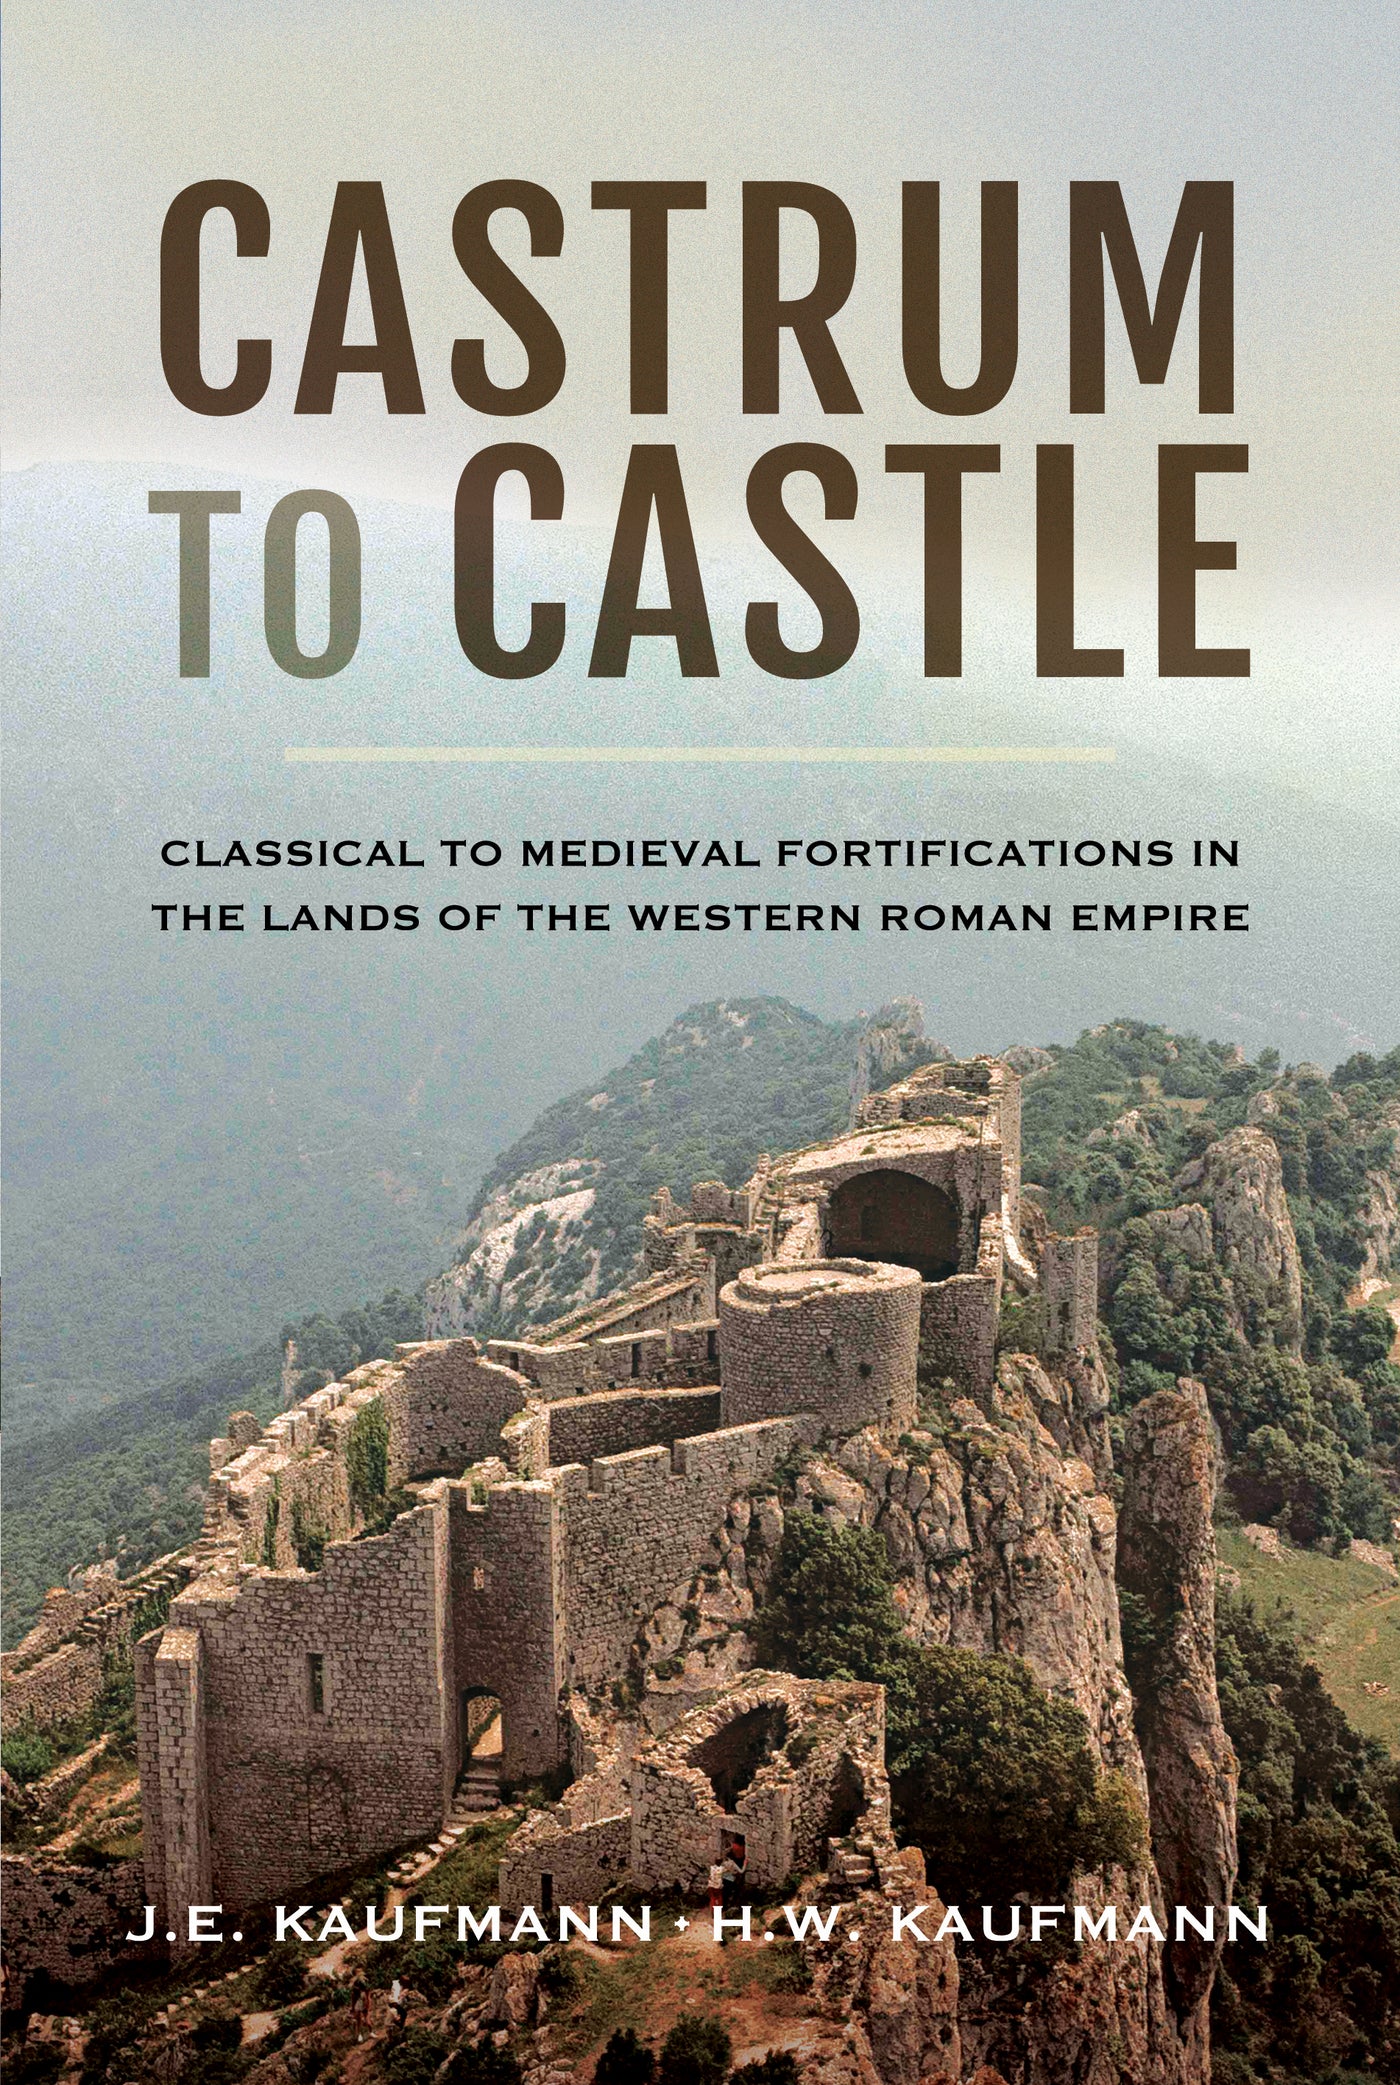 Castrum to Castle